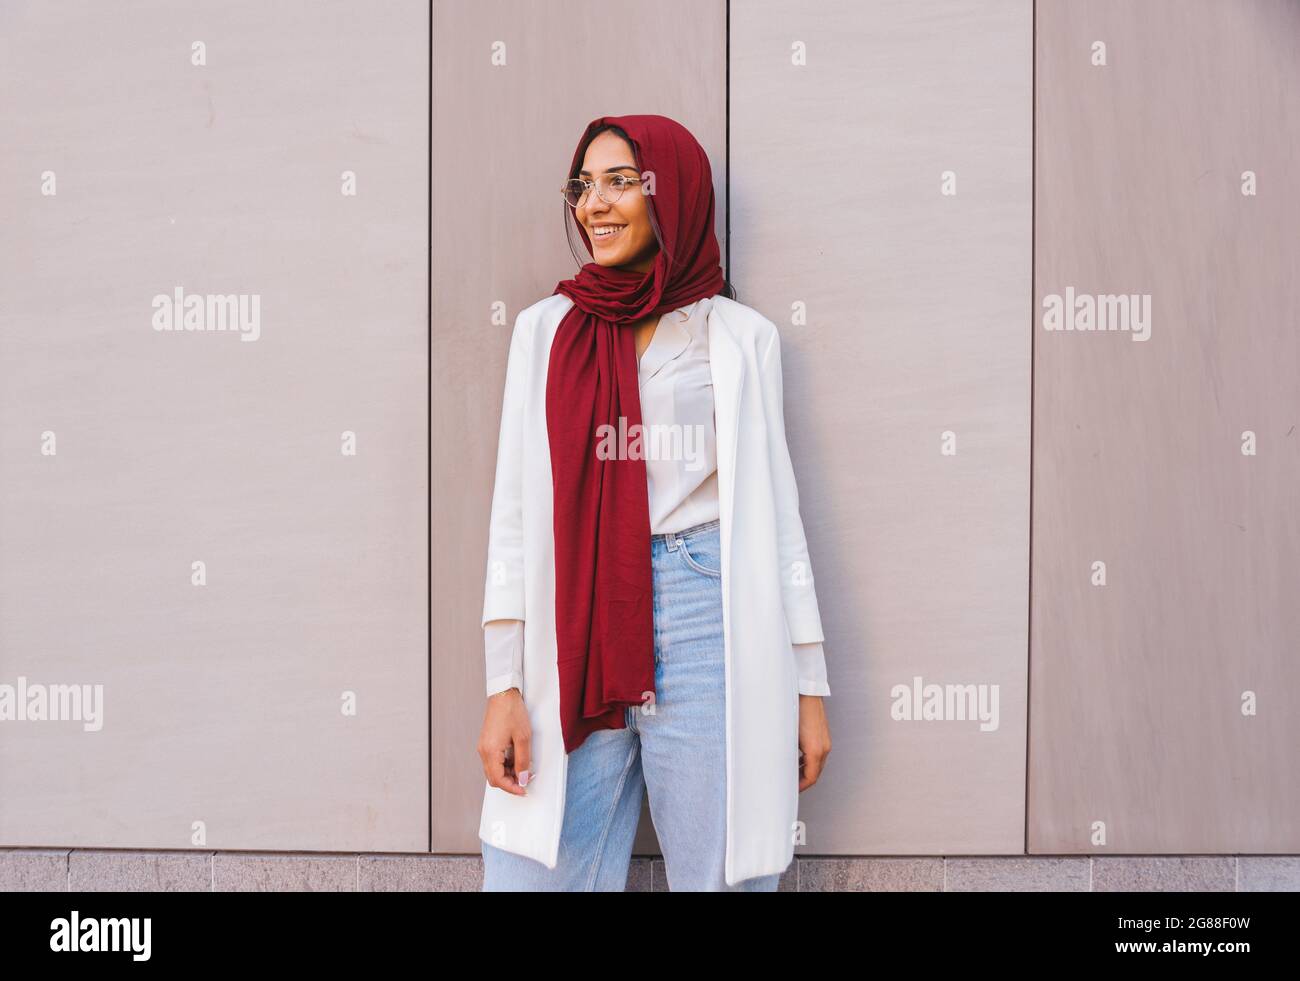 Mujer Musulmana Moderna Con Elegante Ropa Informal Hiyab Aislada En Un  Fondo Rosa. Diversas Personas Modelan El Concepto De Moda Hijab. Fotos,  retratos, imágenes y fotografía de archivo libres de derecho. Image